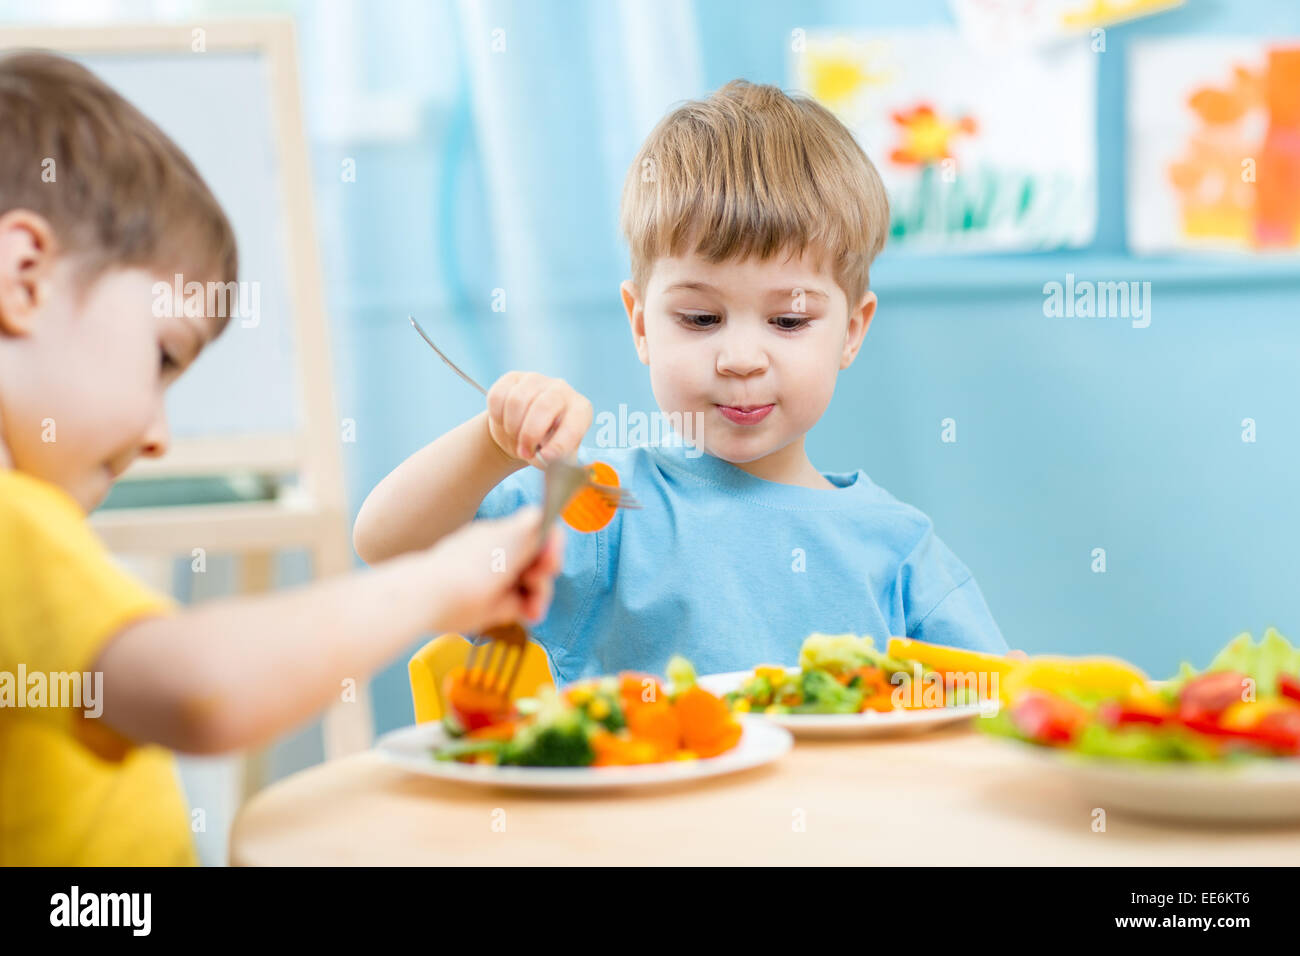 children eating in kindergarten Stock Photo